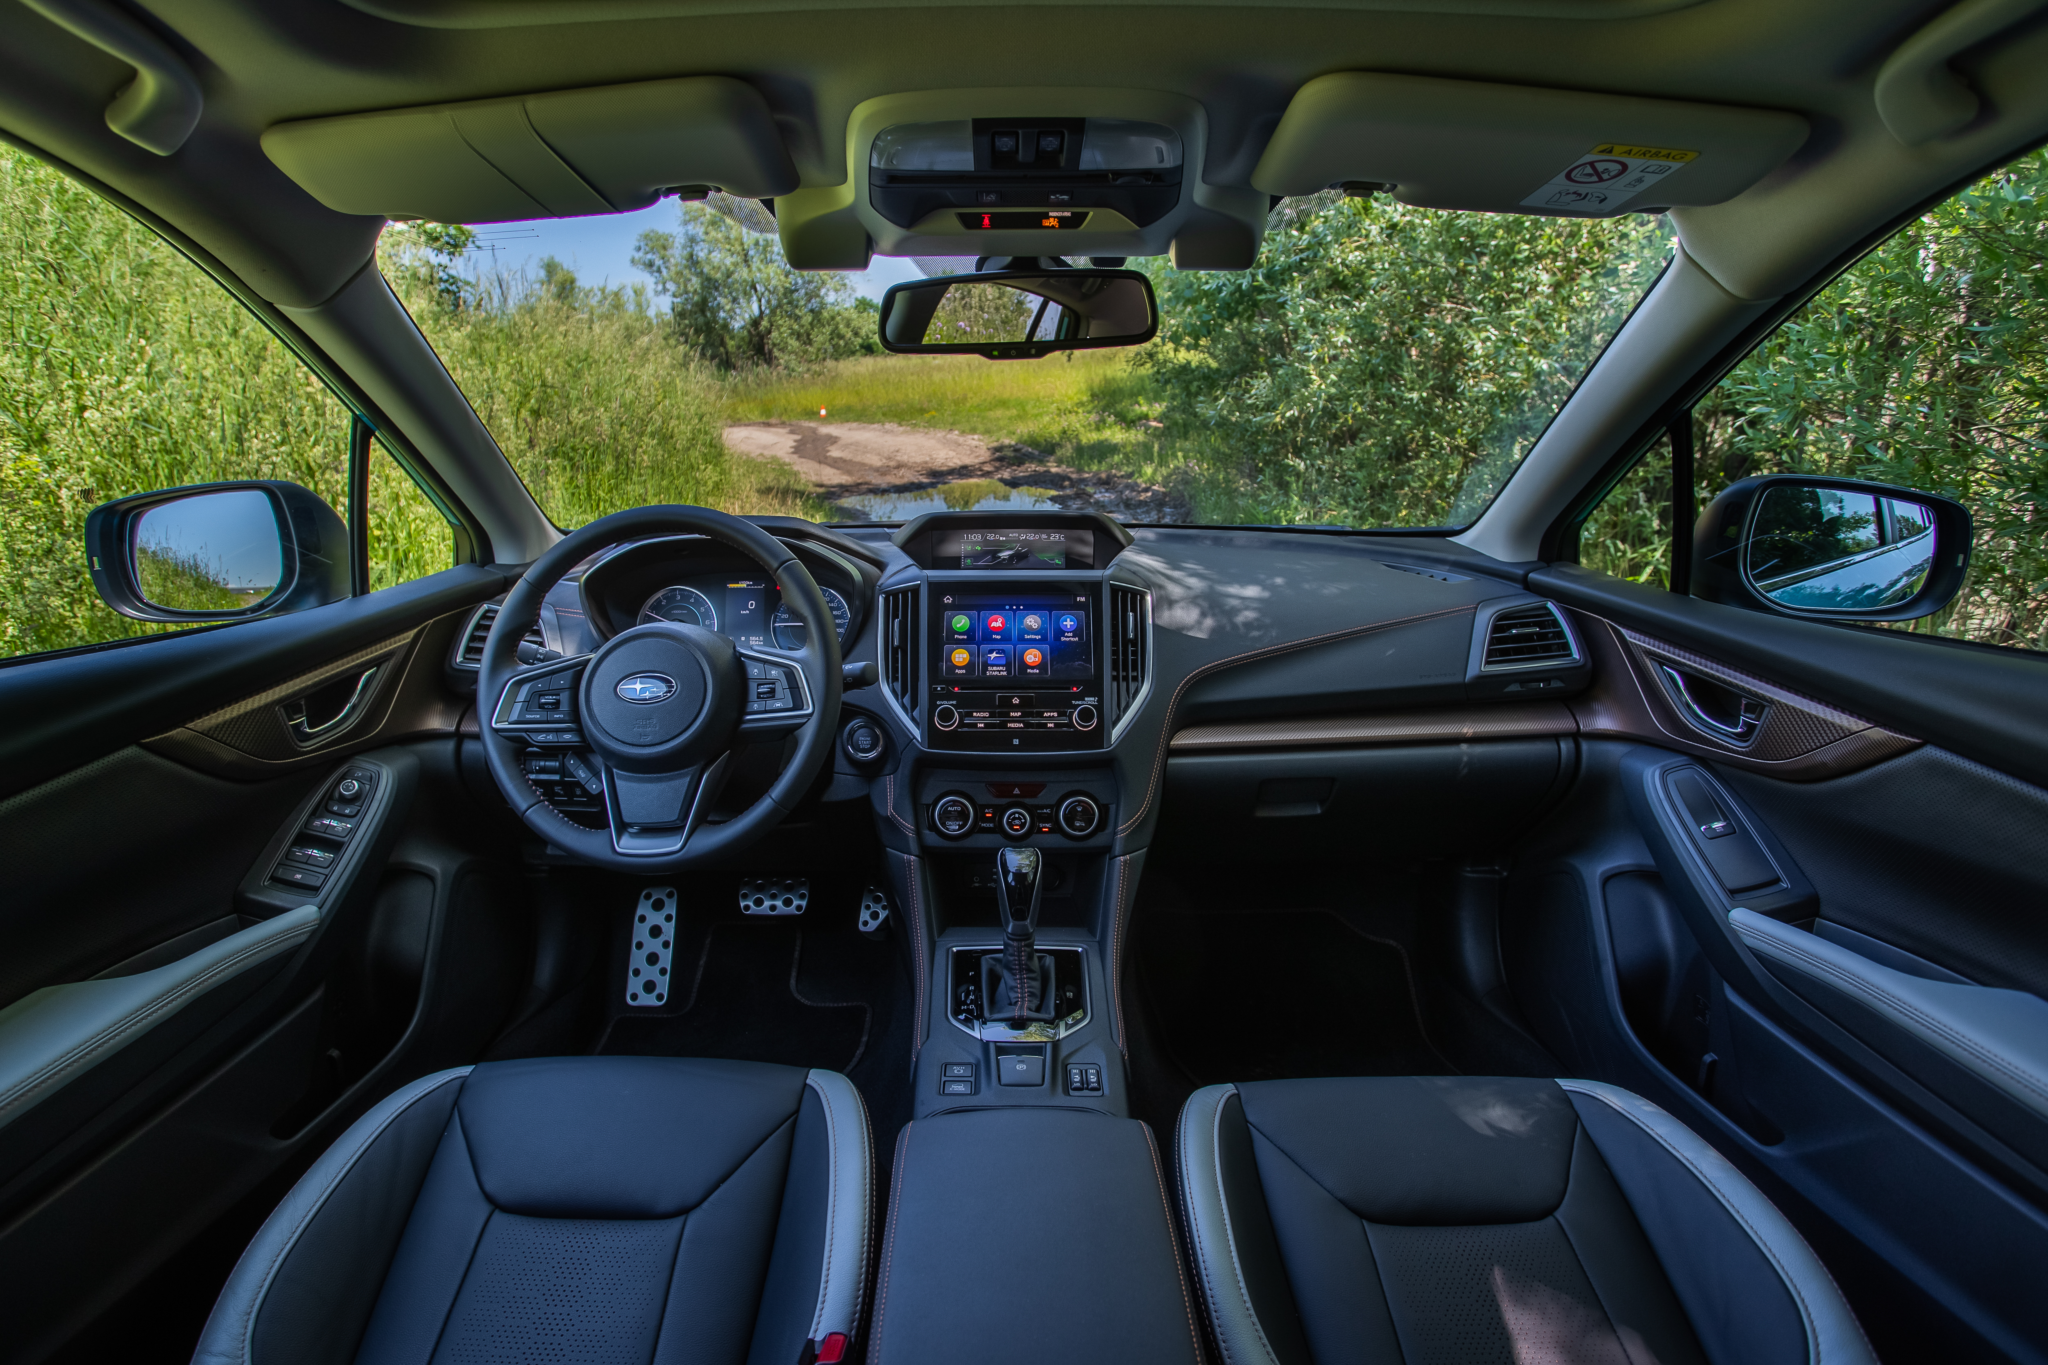 Salpicadero vista frontal completo Subaru XV Hybrid - Prueba Subaru XV Eco Hybrid 2020: Un SUV híbrido, económico y con grandes cualidades off-road